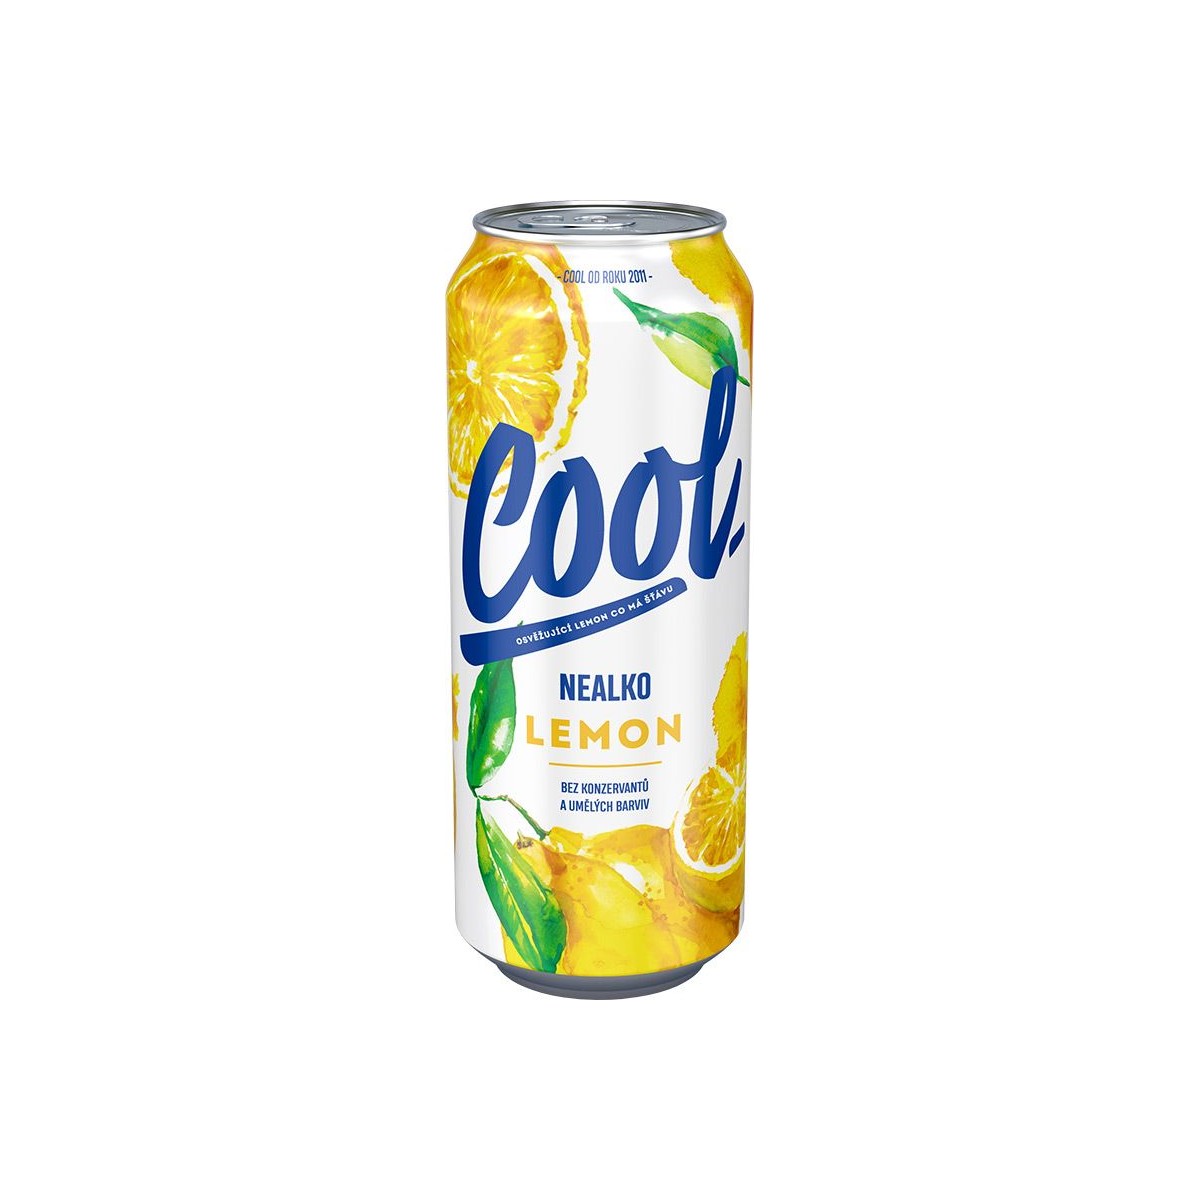 Staropramen cool nealko lemon 0,5l - plech